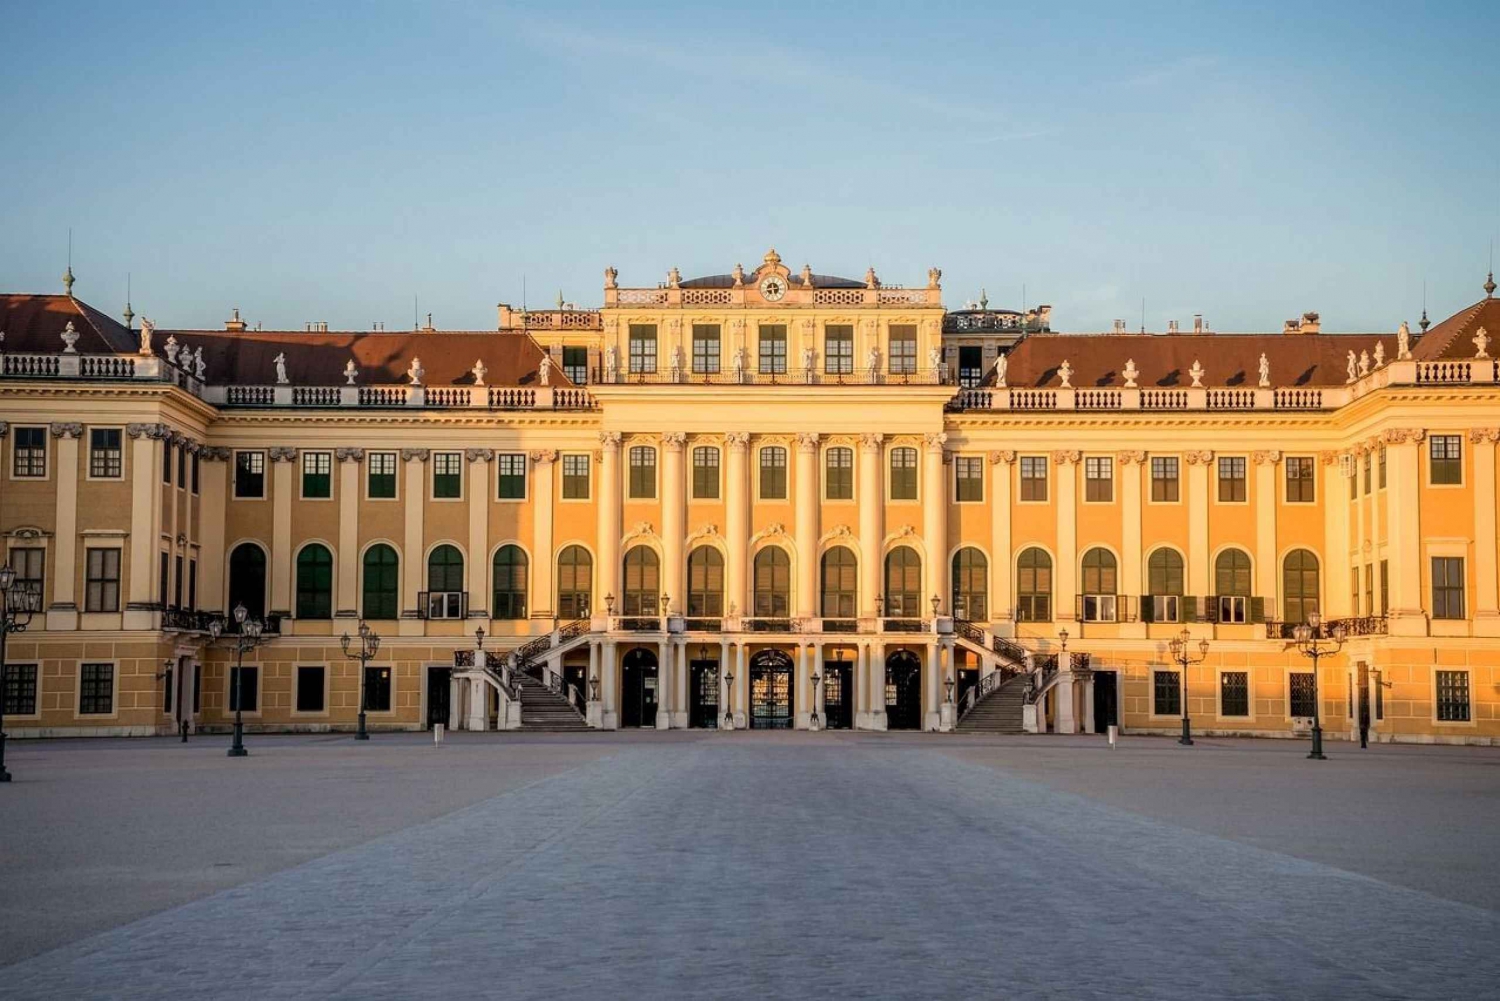 Yksityinen Schönbrunnin palatsikierros: Schönbrundin palatsi: Sisäänpääsy sisältyy